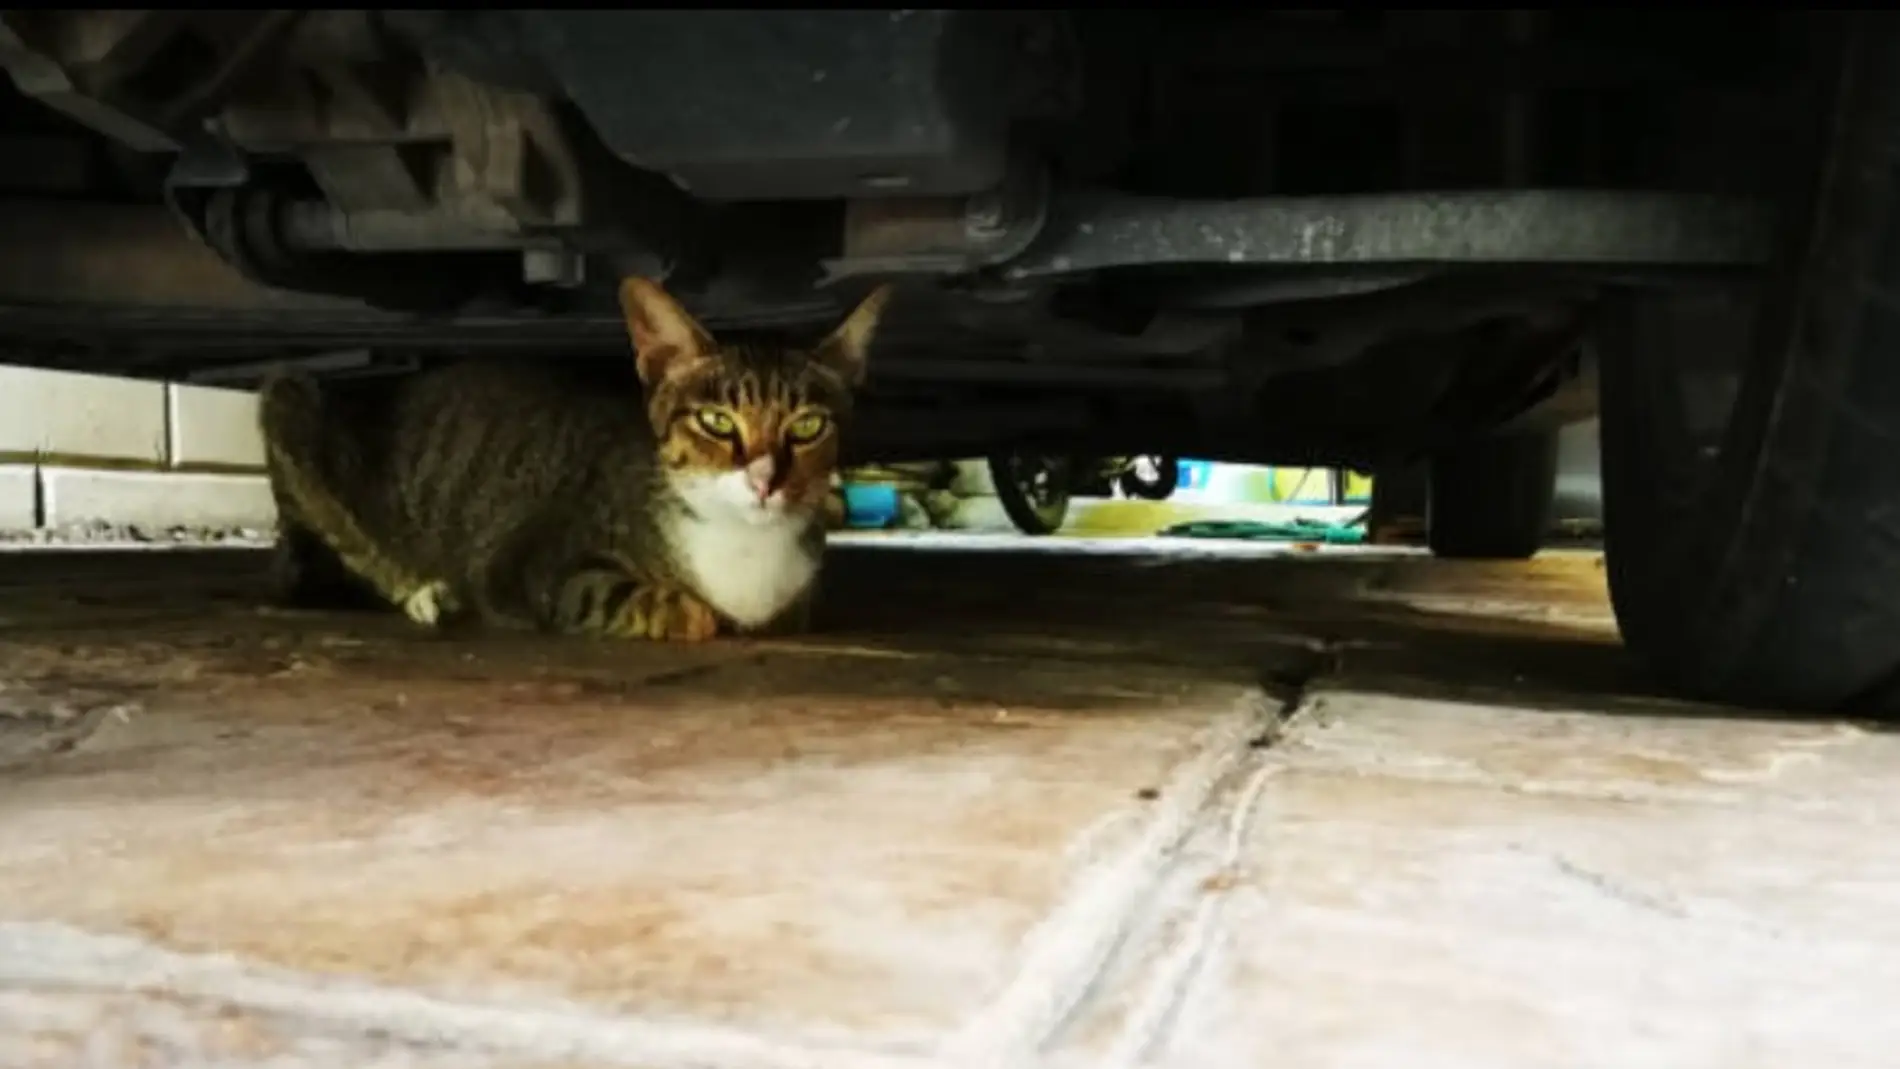 Gato debajo de un coche